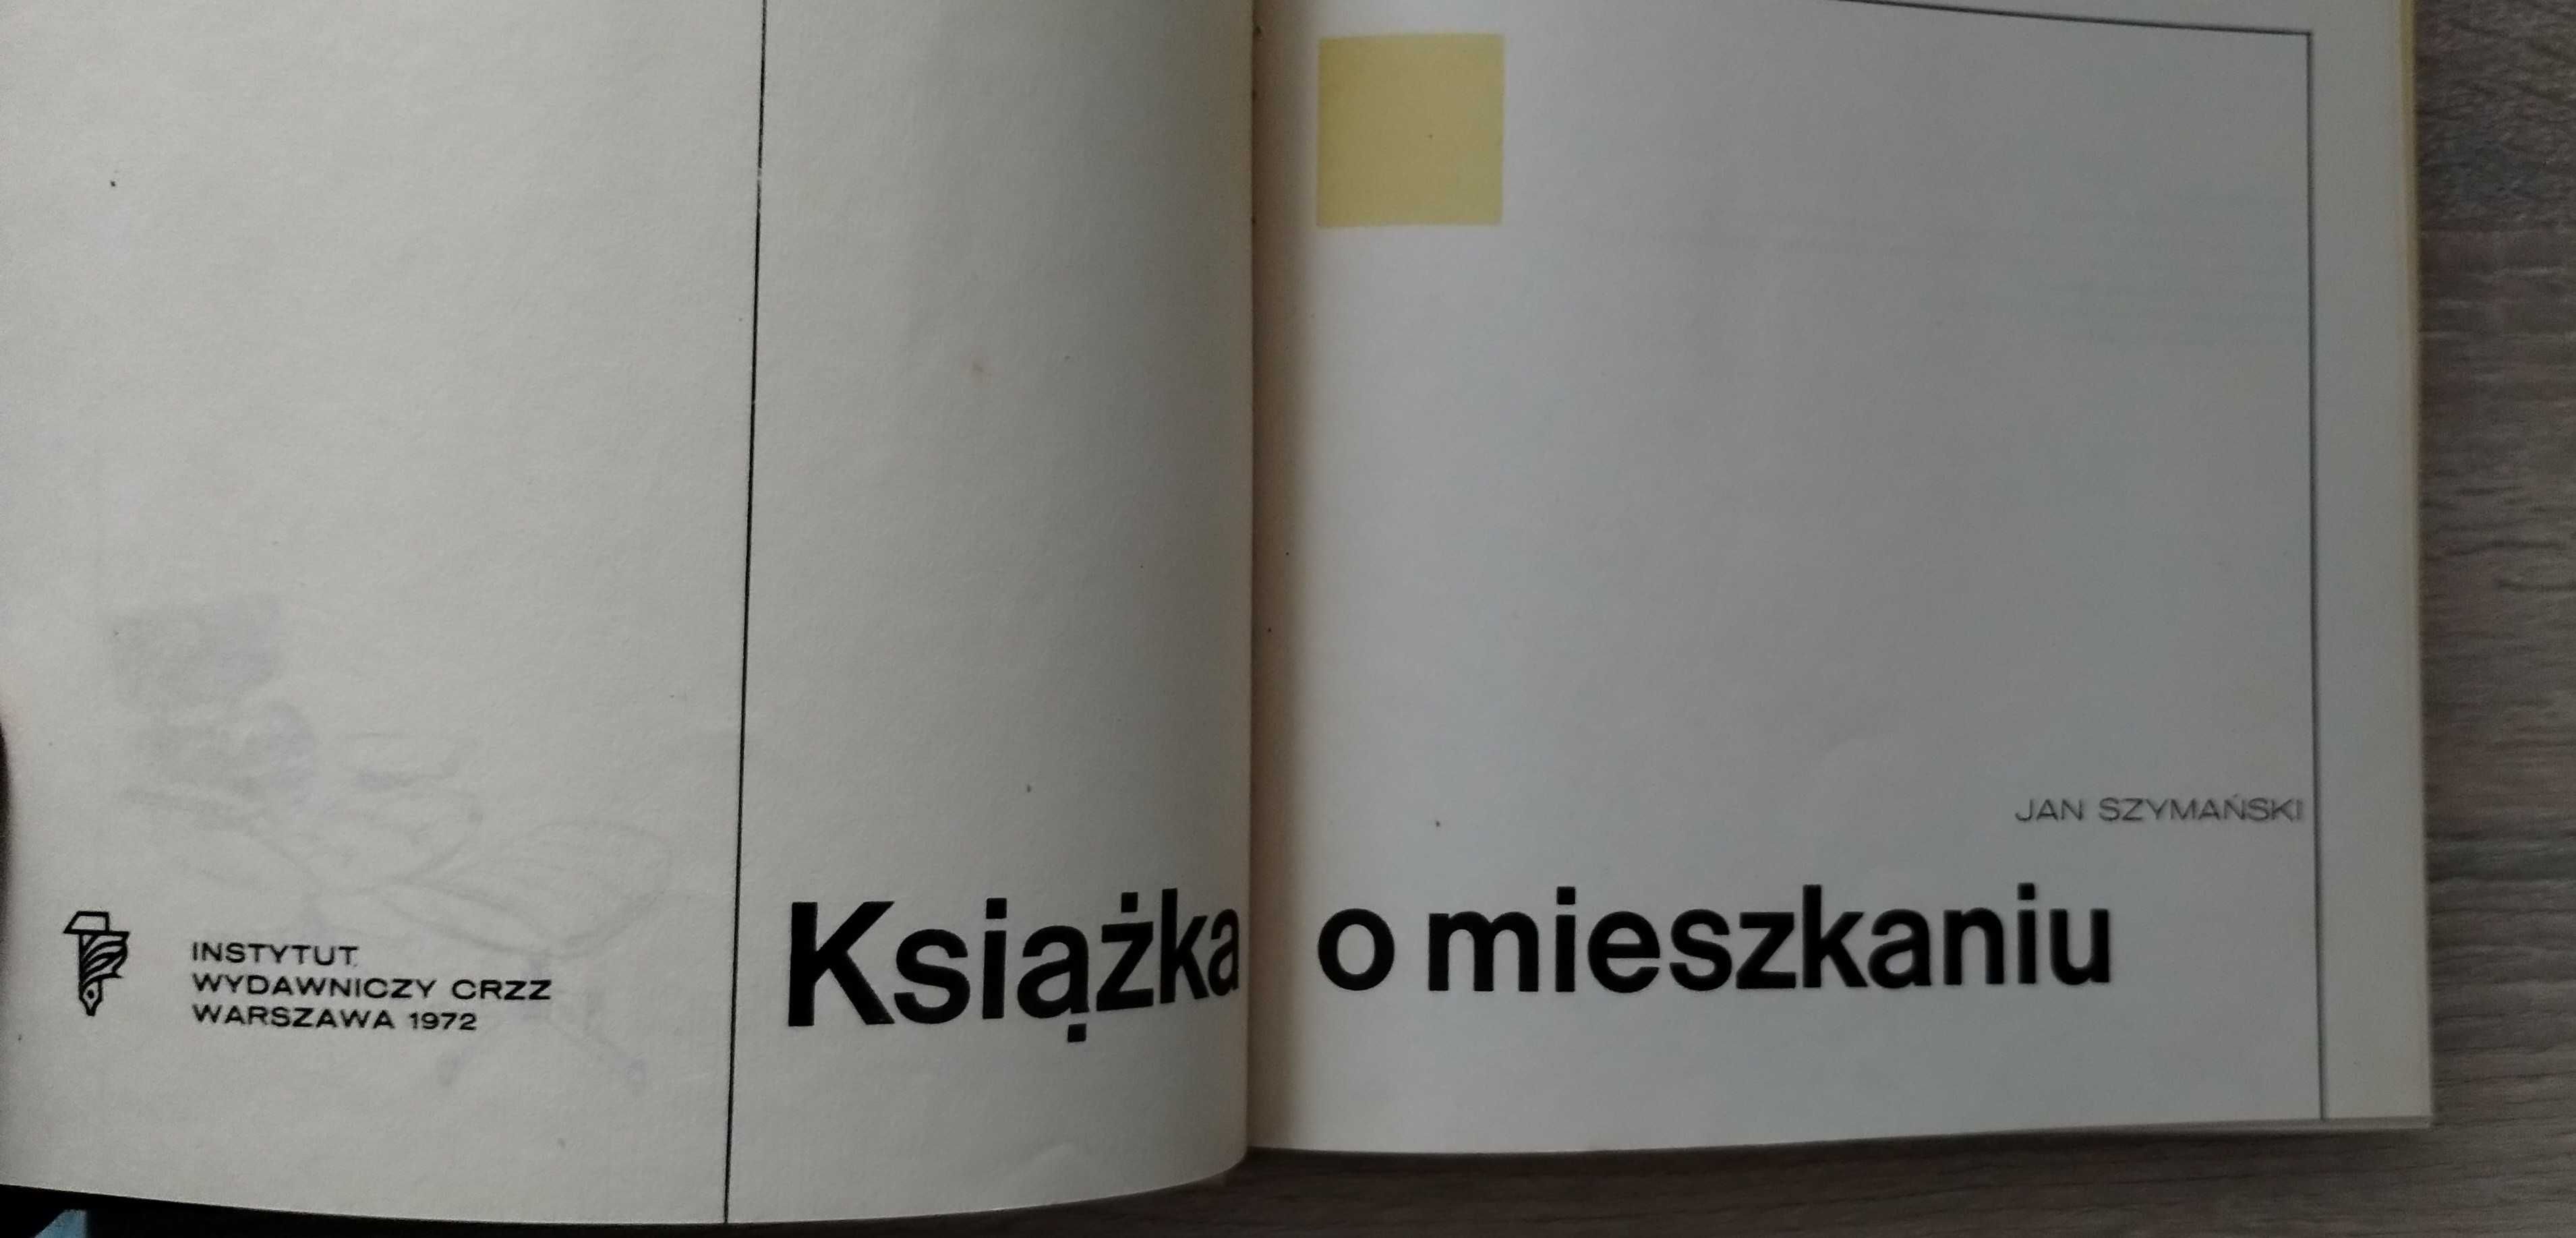 "Książka o mieszkaniu" Jan Szymański 1972 PRL